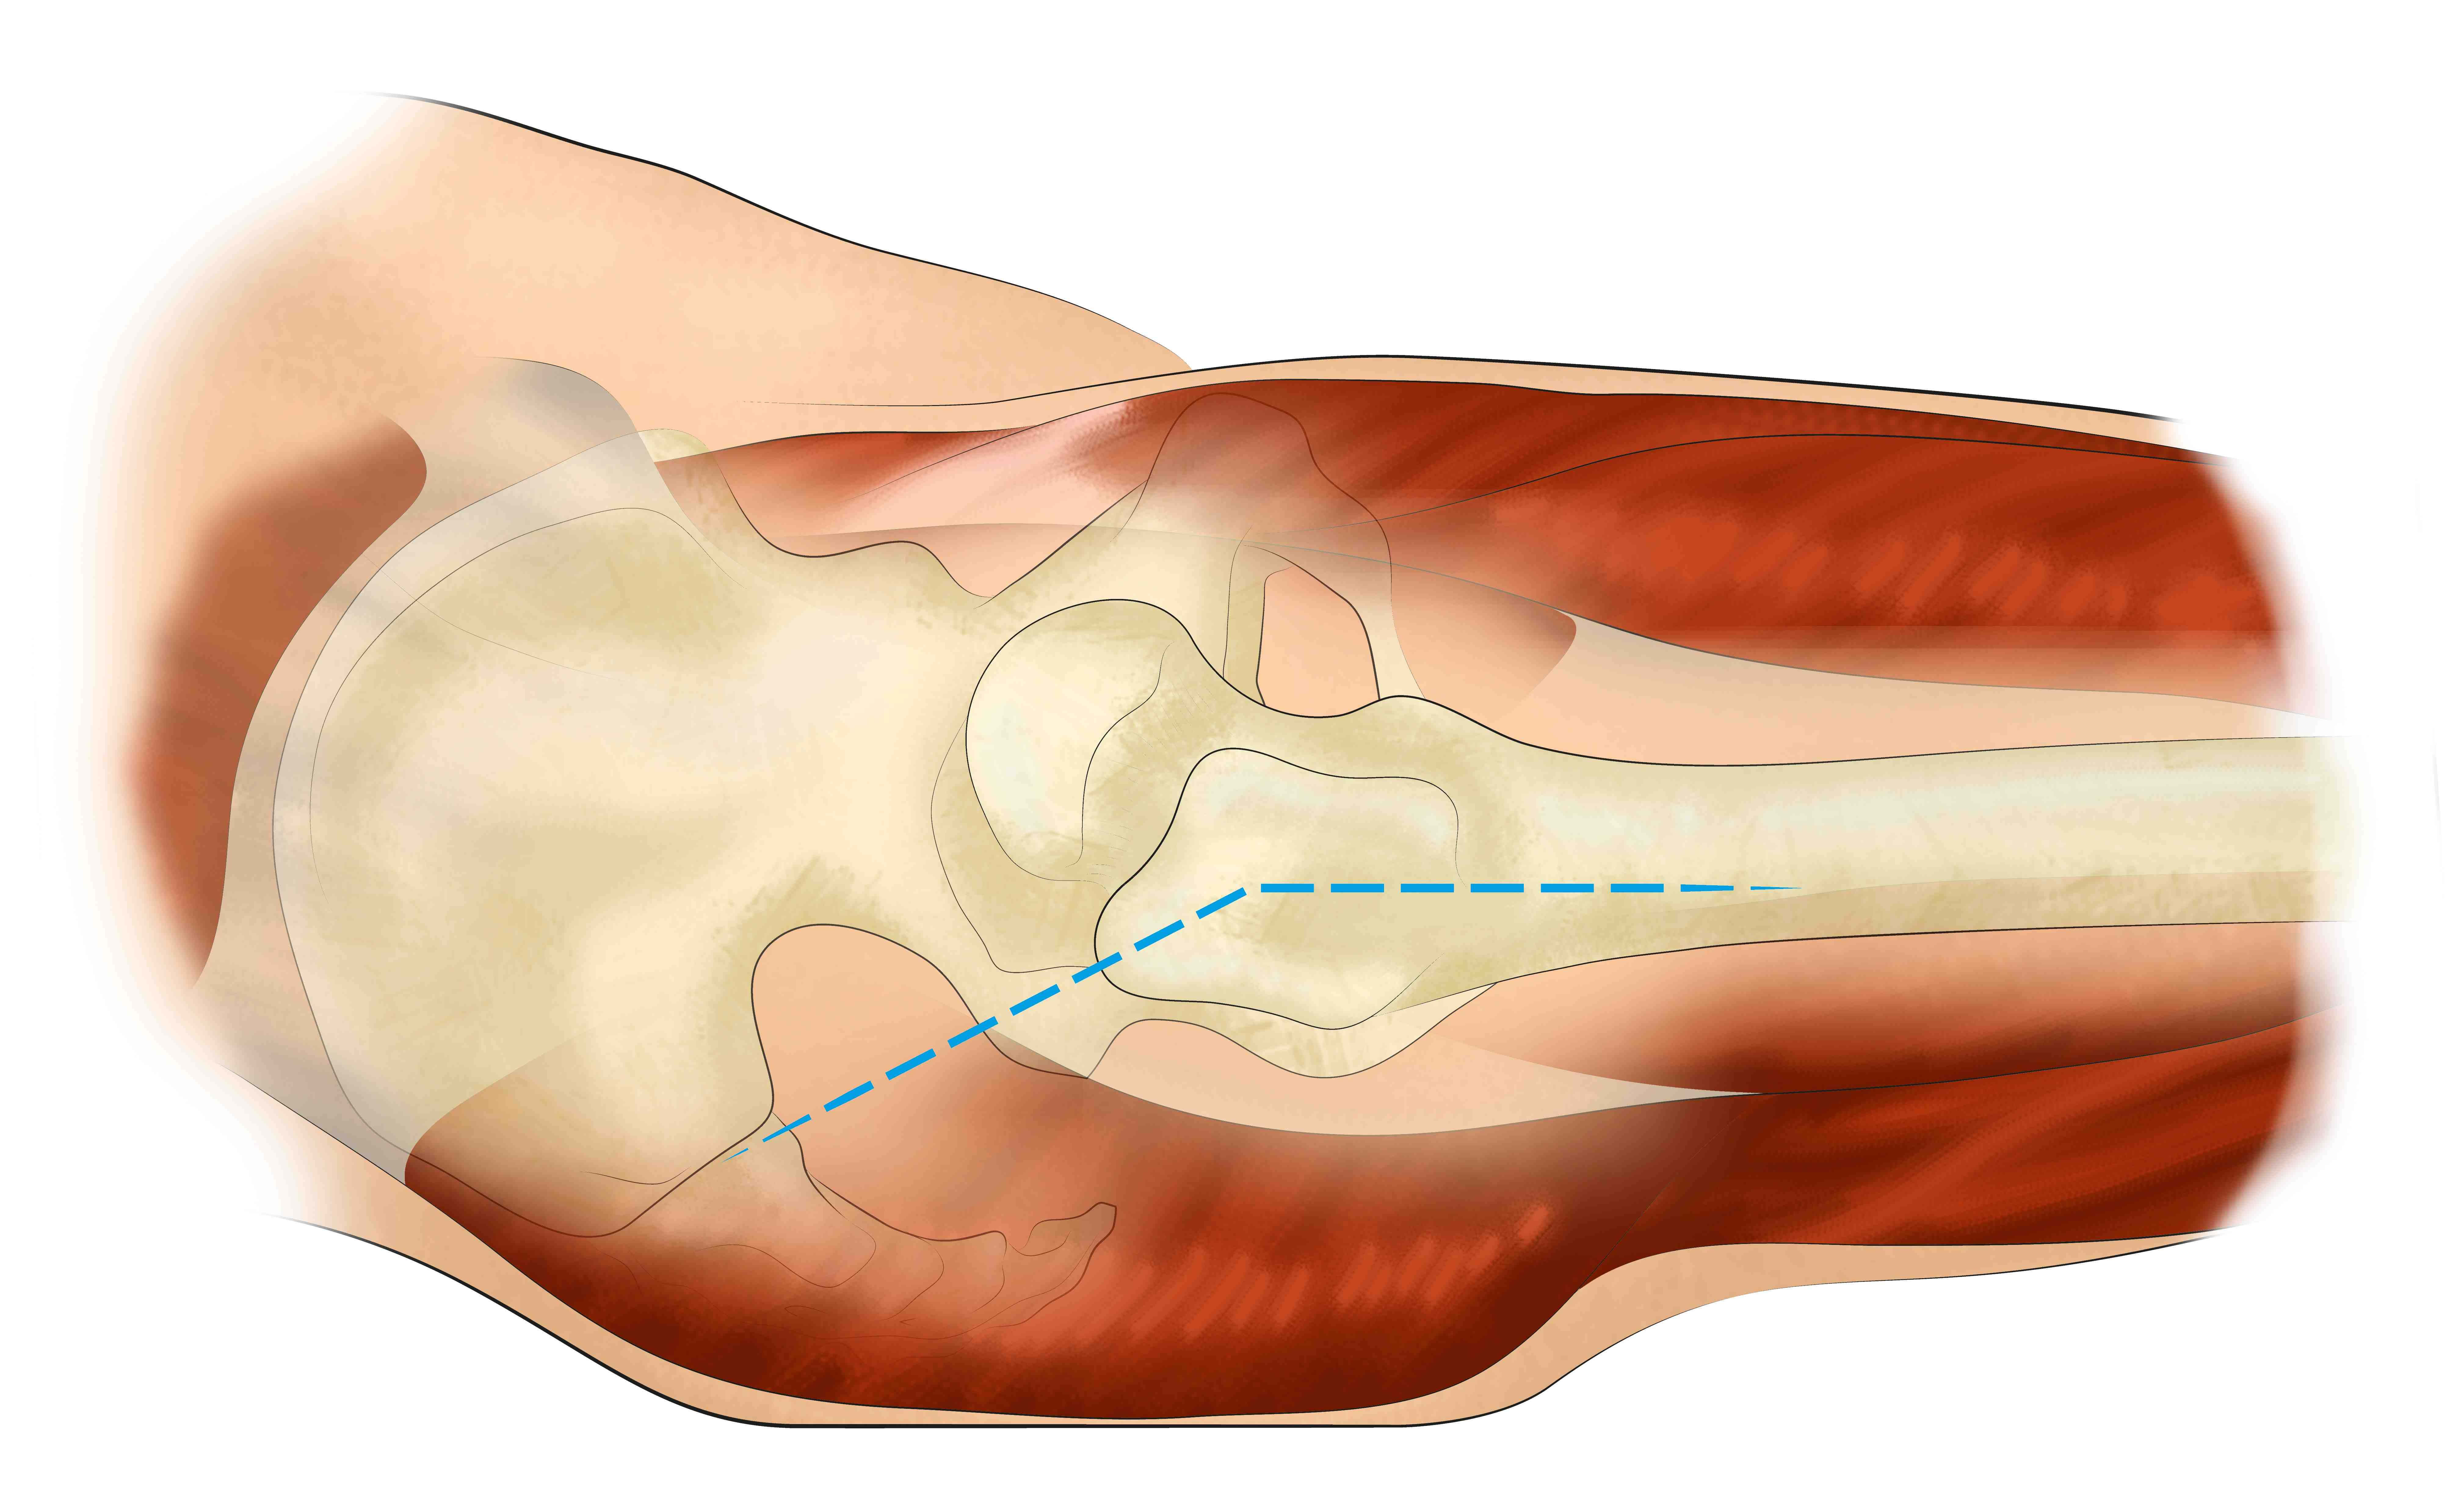 prothese totale de hanche mini abord voie antérieure anatomie hanche Dr Bohu 